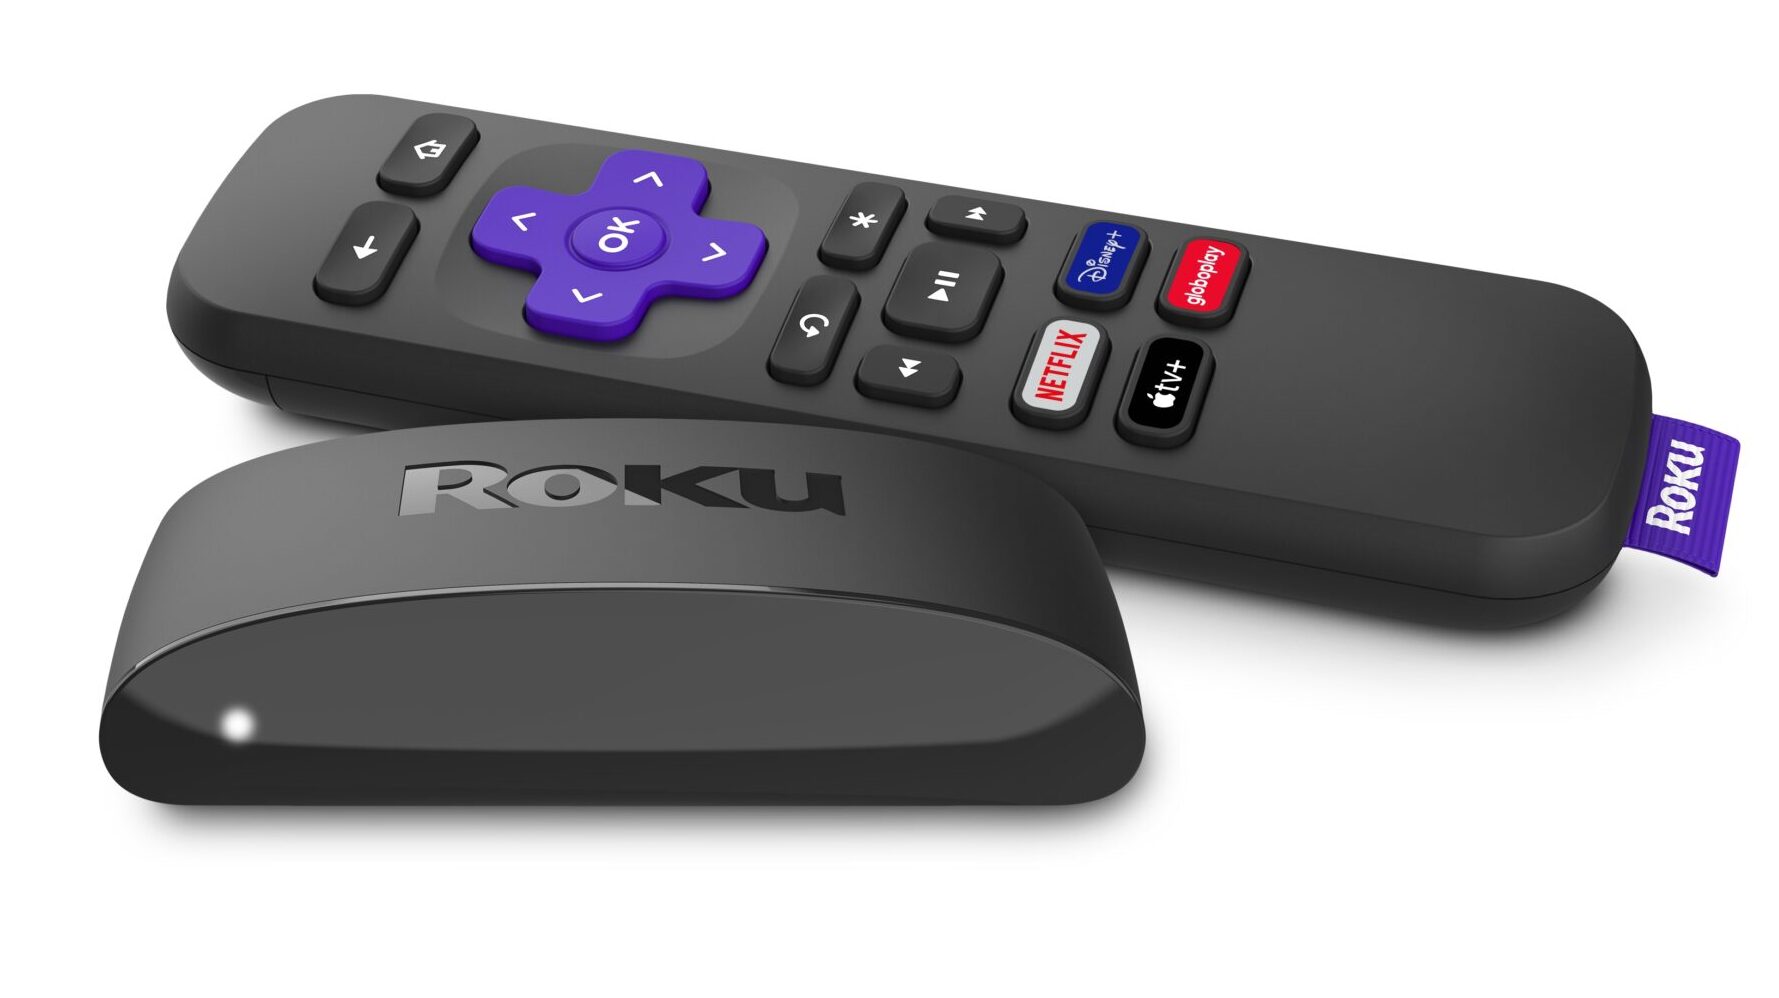 Roku Express, Dispositivo para Transformar TV em smart TV